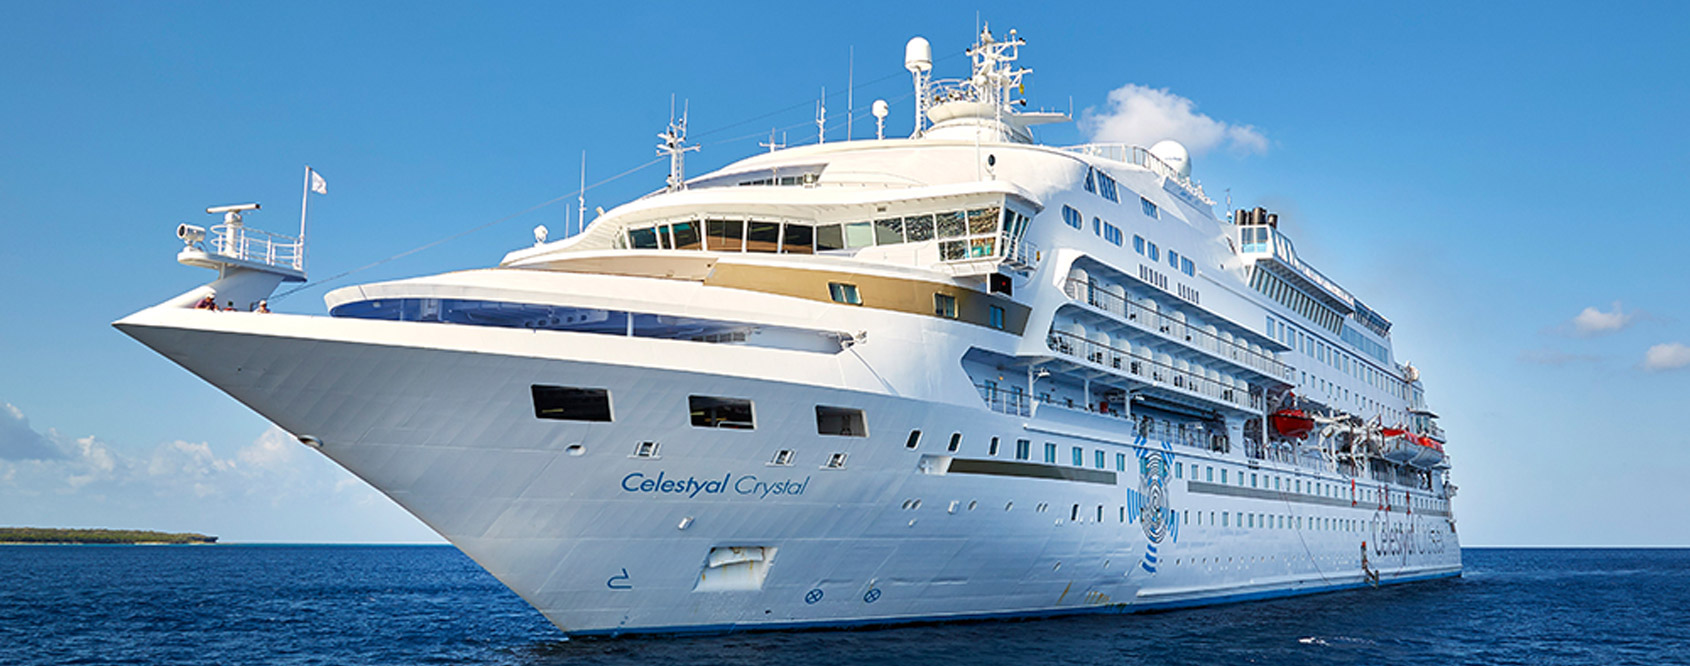 Celestyal Cruises Main Image